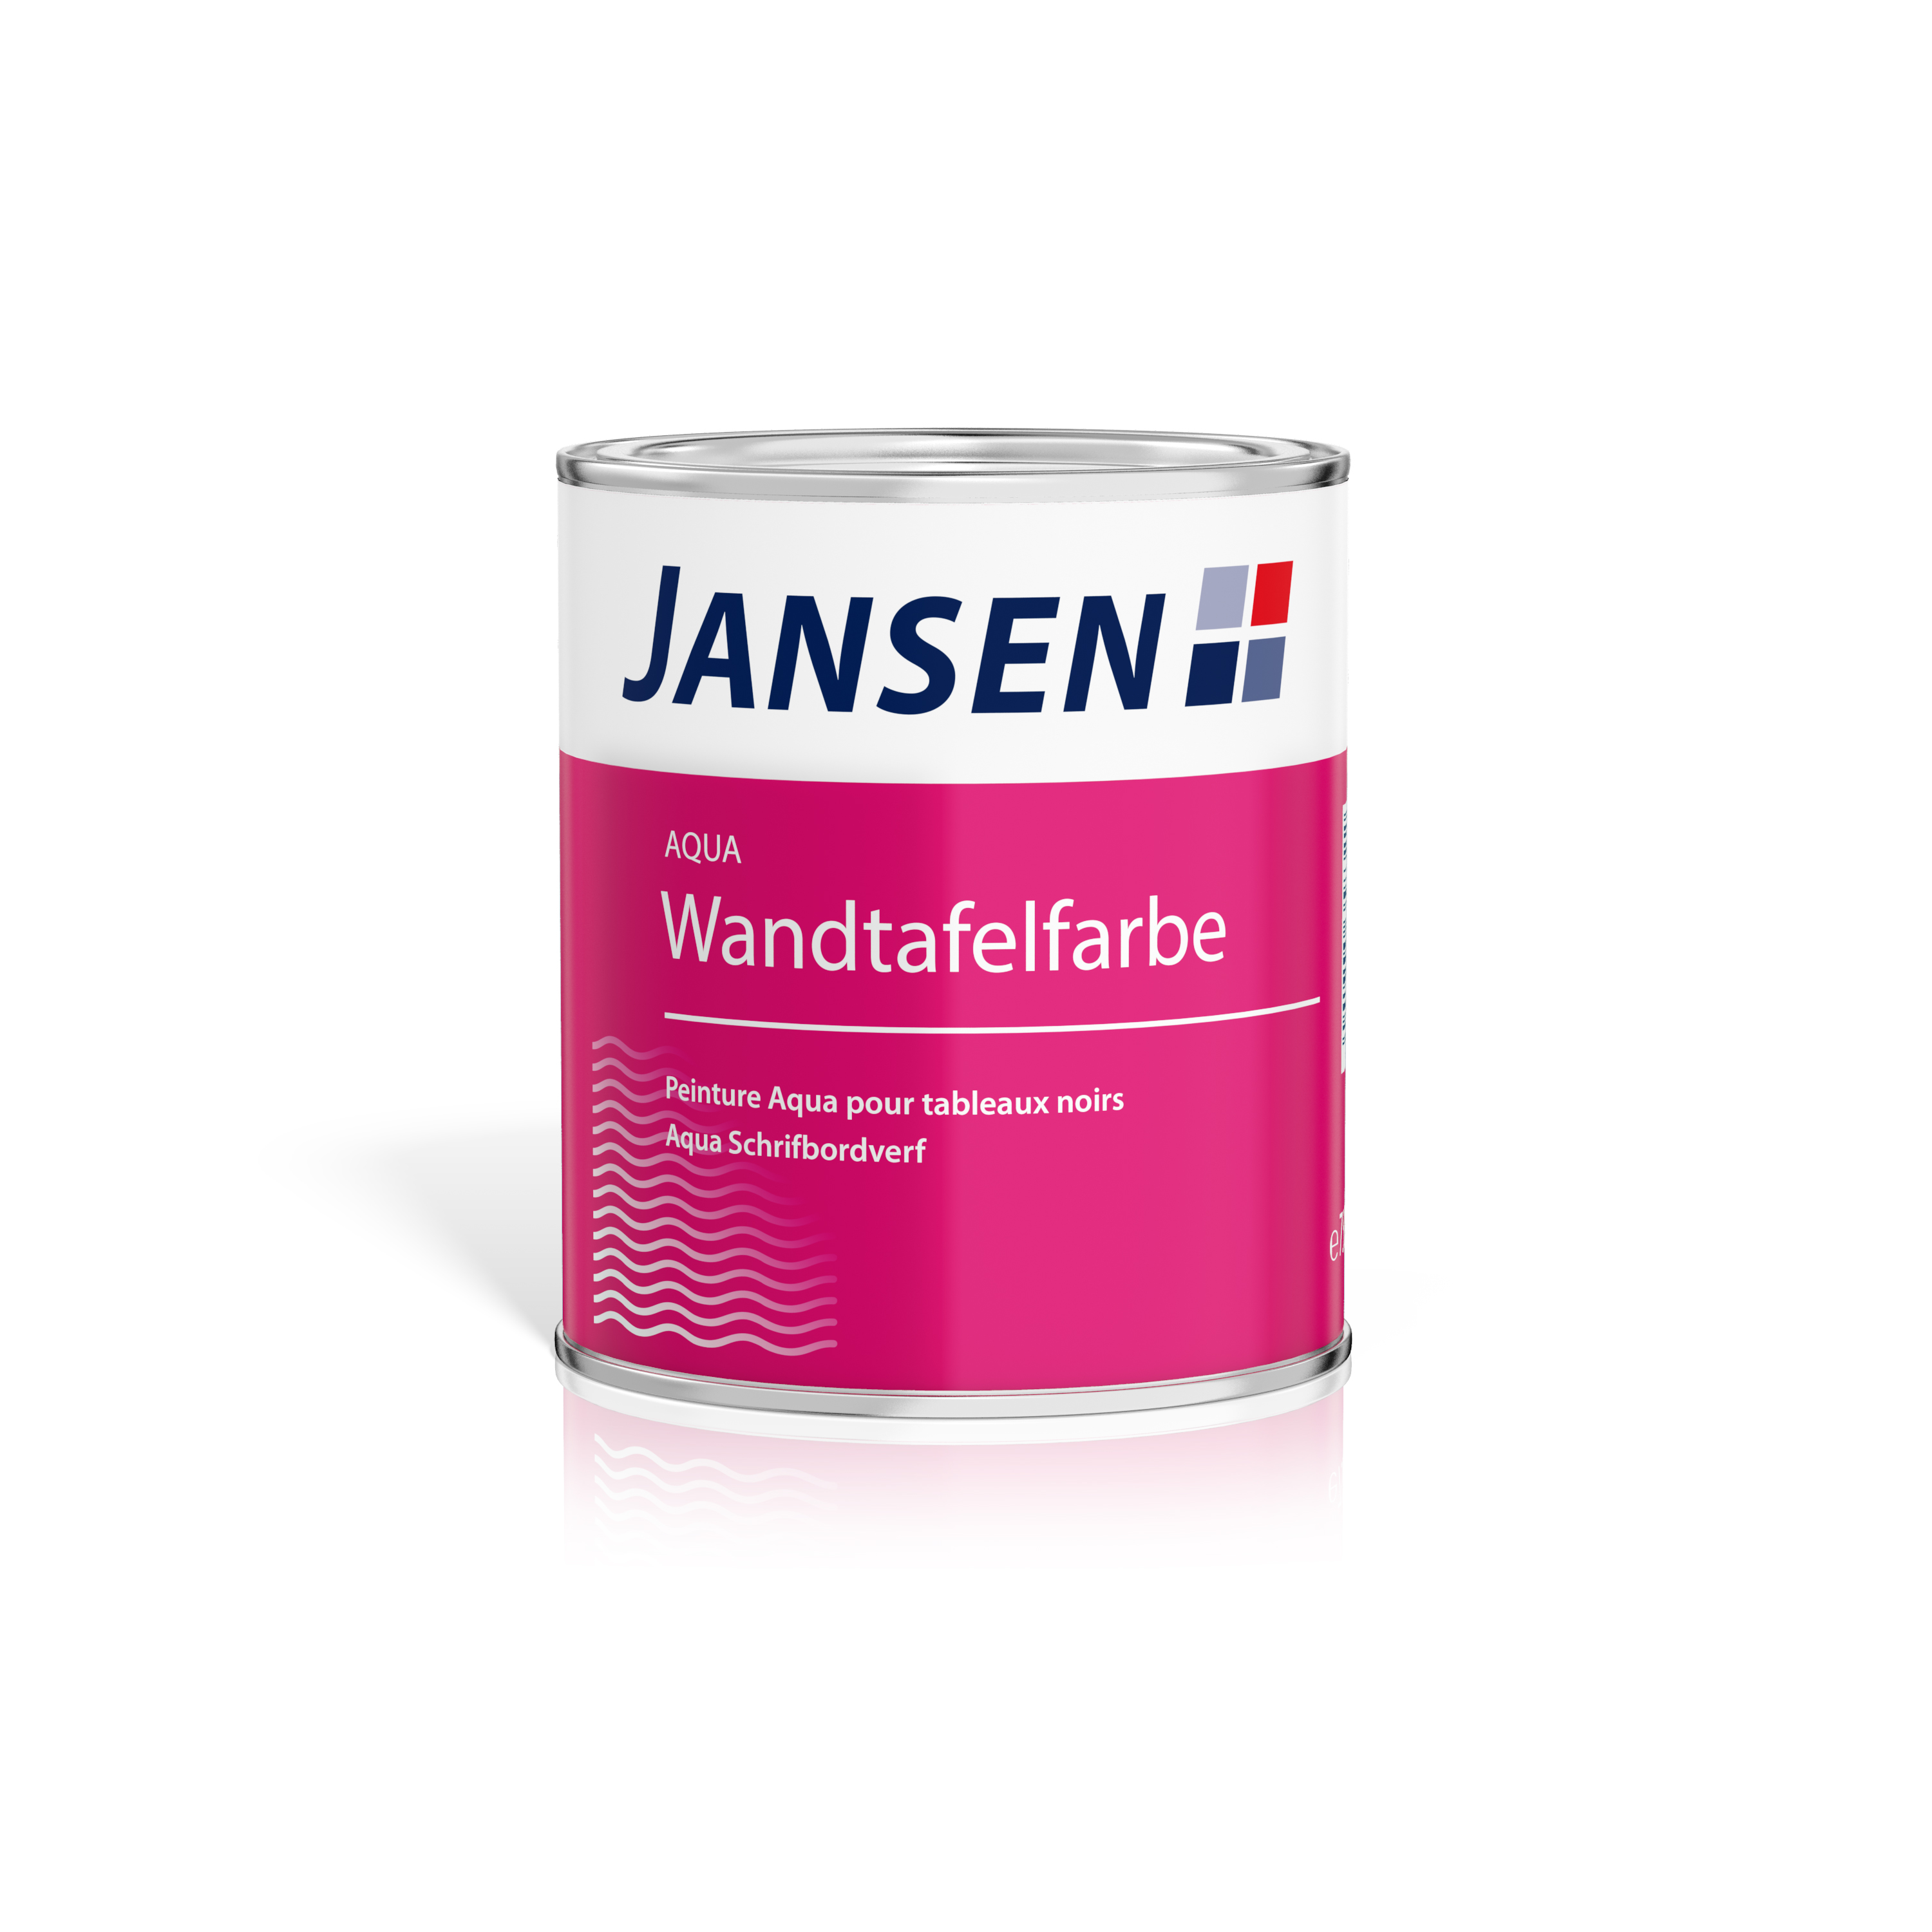 Jansen Aqua Wandtafelfarbe 750ml